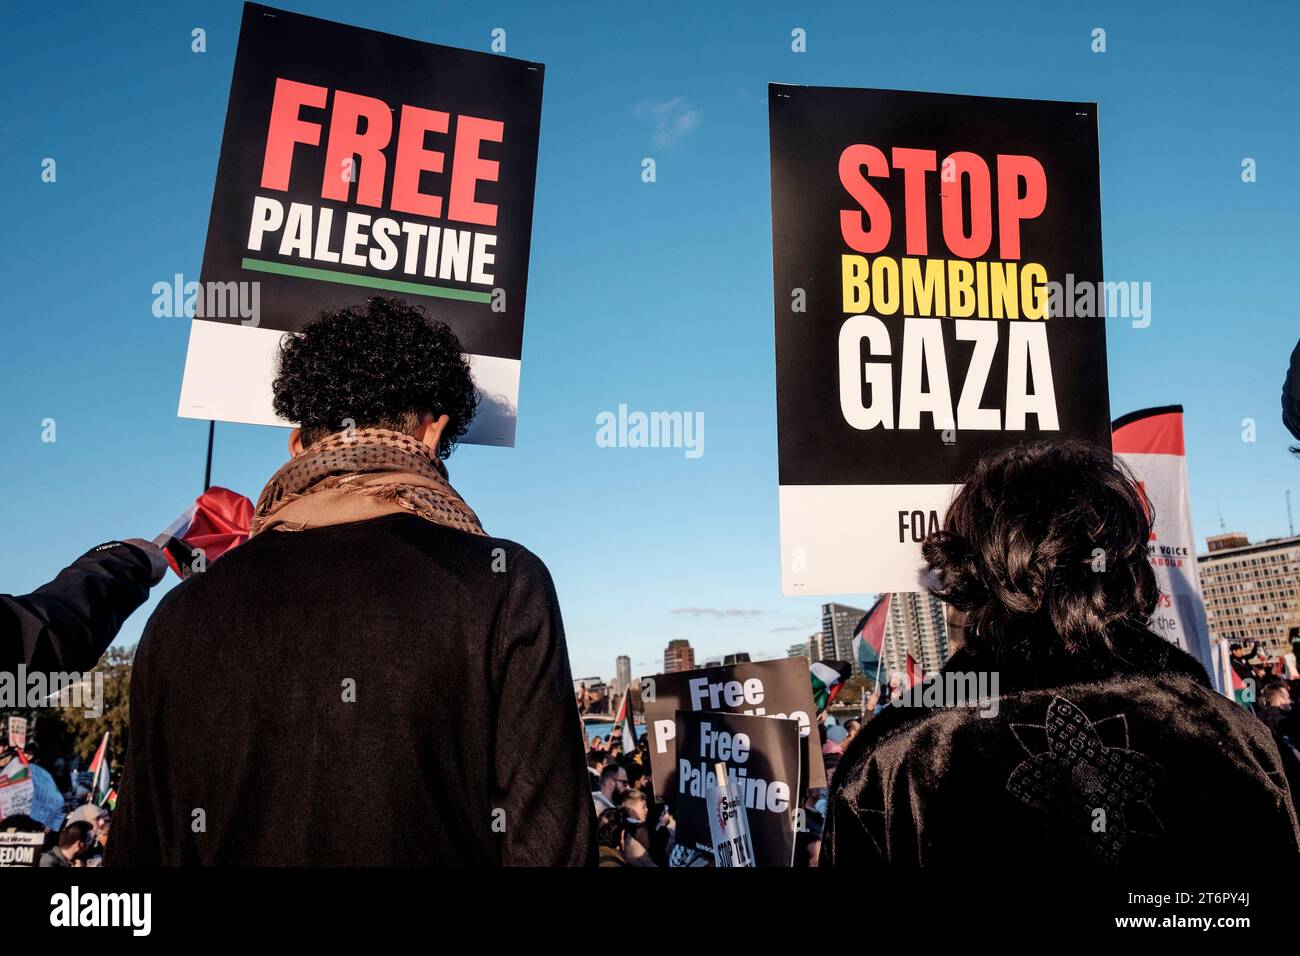 11 novembre 2023, Londra, Regno Unito. Centinaia di migliaia di persone marciano attraverso il centro di Londra per protestare contro il continuo bombardamento di Gaza da parte di Israele. Gli organizzatori della manifestazione, la Palestina Solidarity Campaign, chiedono un cessate il fuoco immediato. Foto Stock